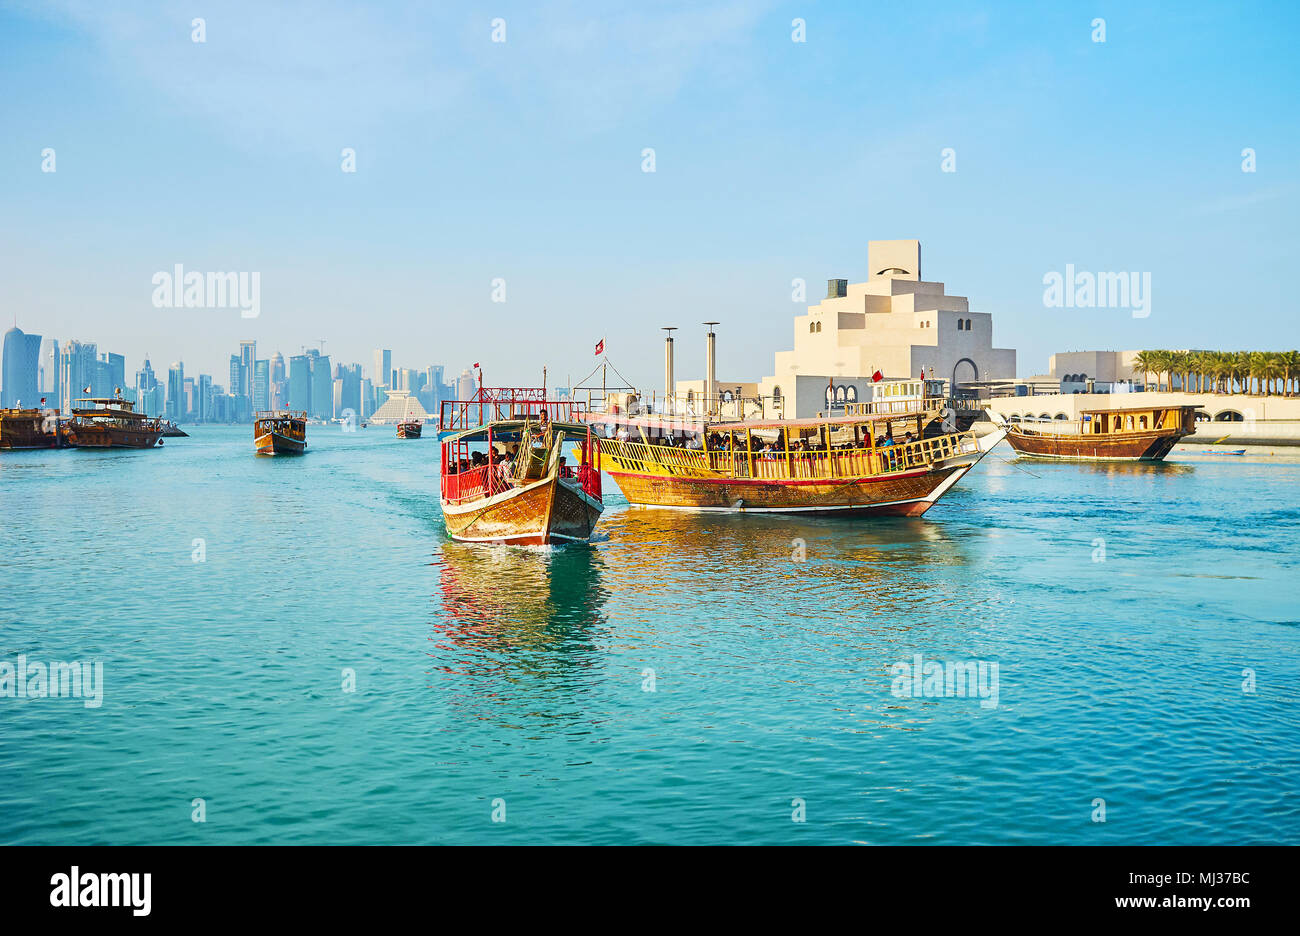 DOHA, QATAR - Febrero 13, 2018: Las embarcaciones de recreo con baile turistas salida y llegada al puerto de Doha con una vista sobre el arte islámico moderno Foto de stock